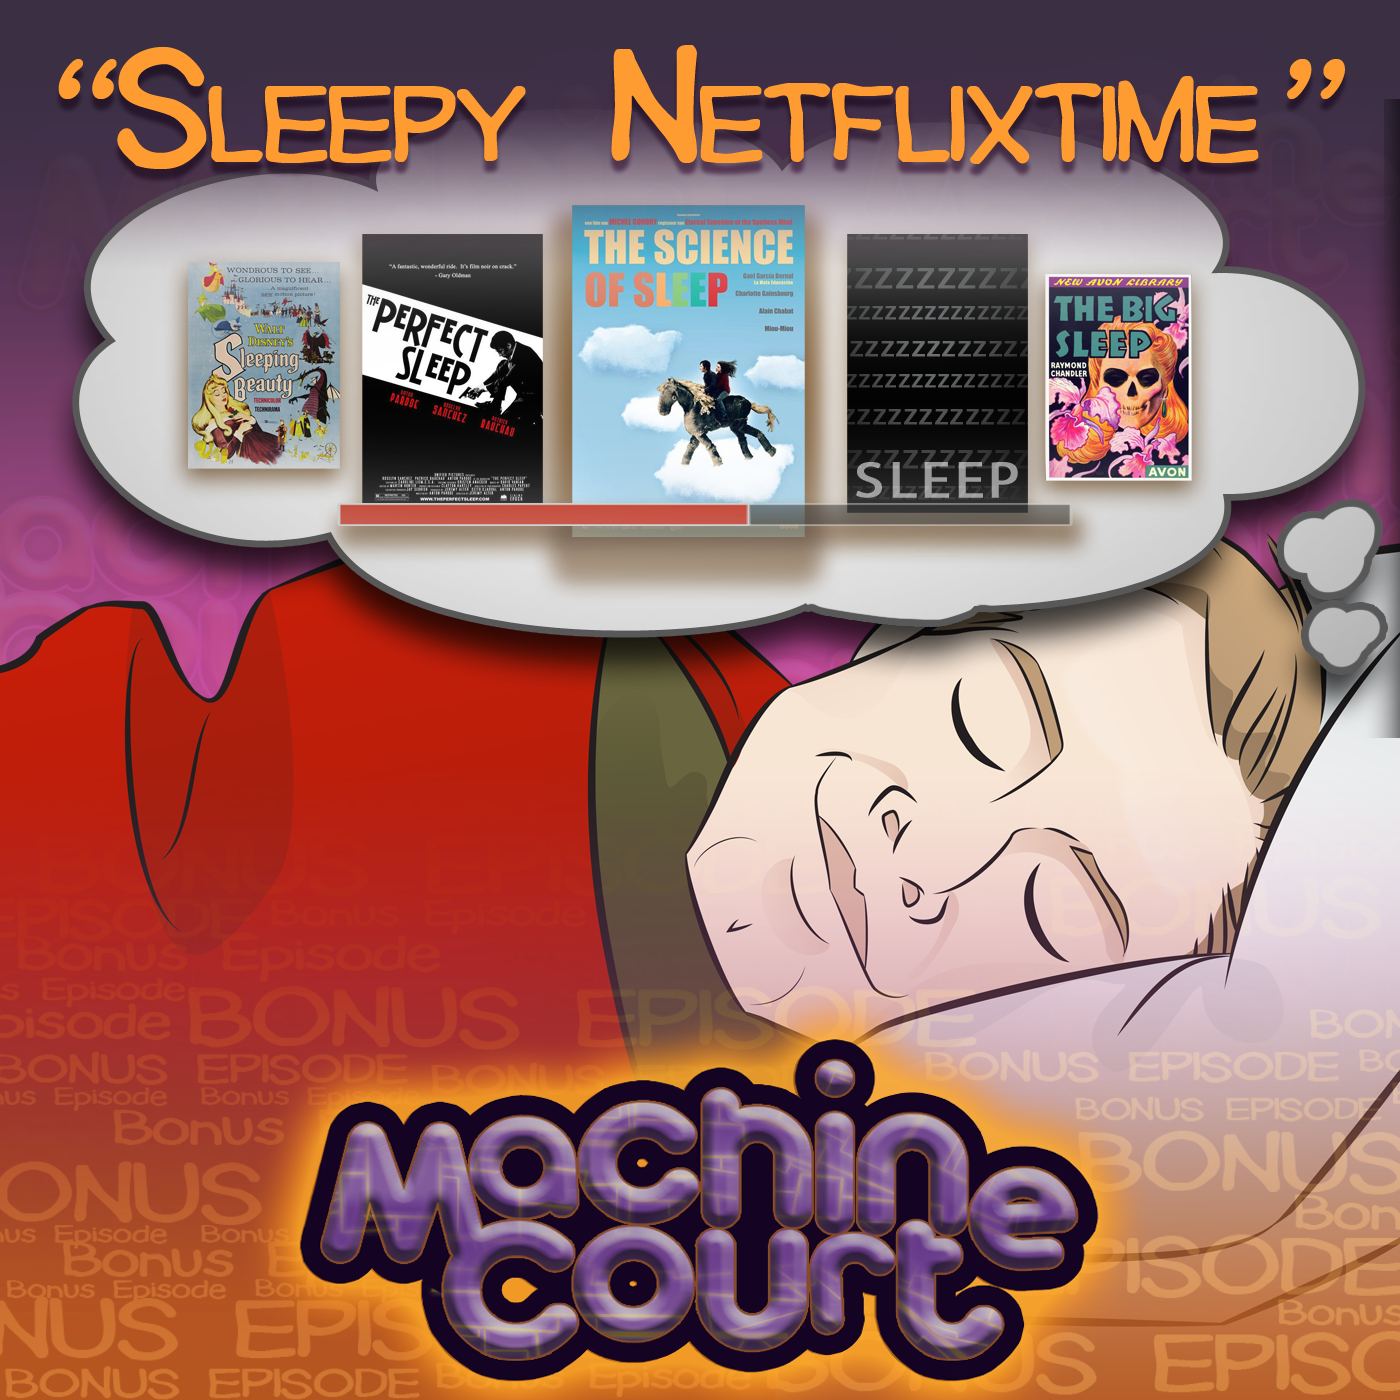 4.06 “Sleepy Netflixtime”